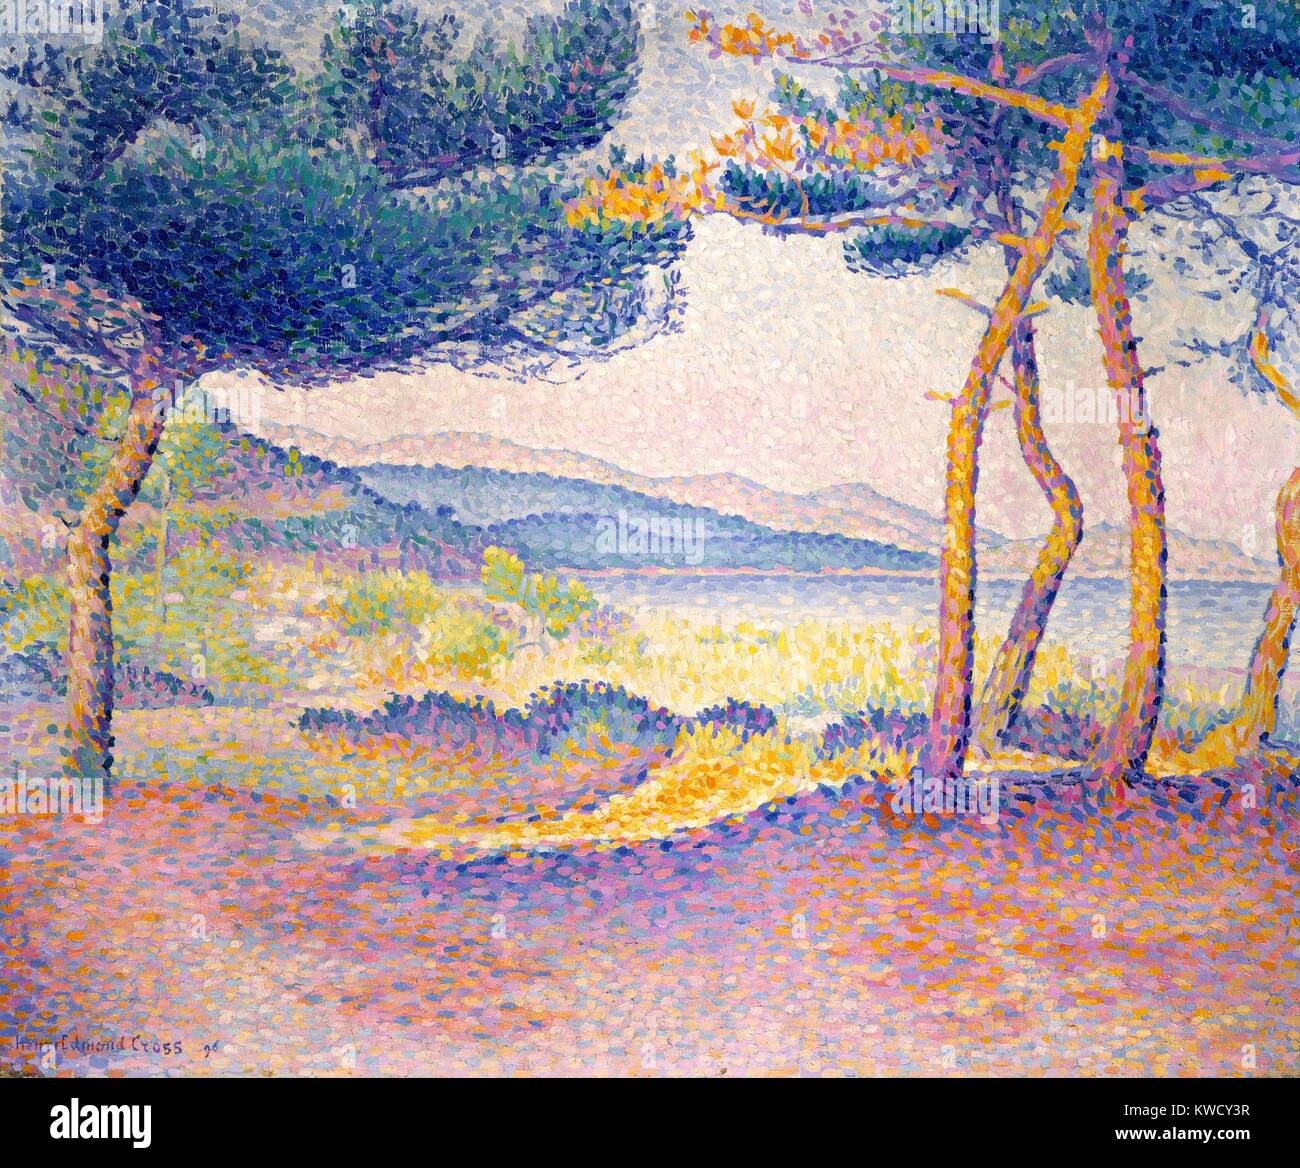 Los pinos a lo largo de la costa, por Henri-Edmond Cross, 1896, Francés Neo-Impressionist, óleo sobre lienzo. Pintado en el sur de Francia en el Mediterráneo (BSLOC 2017 5 104) Foto de stock